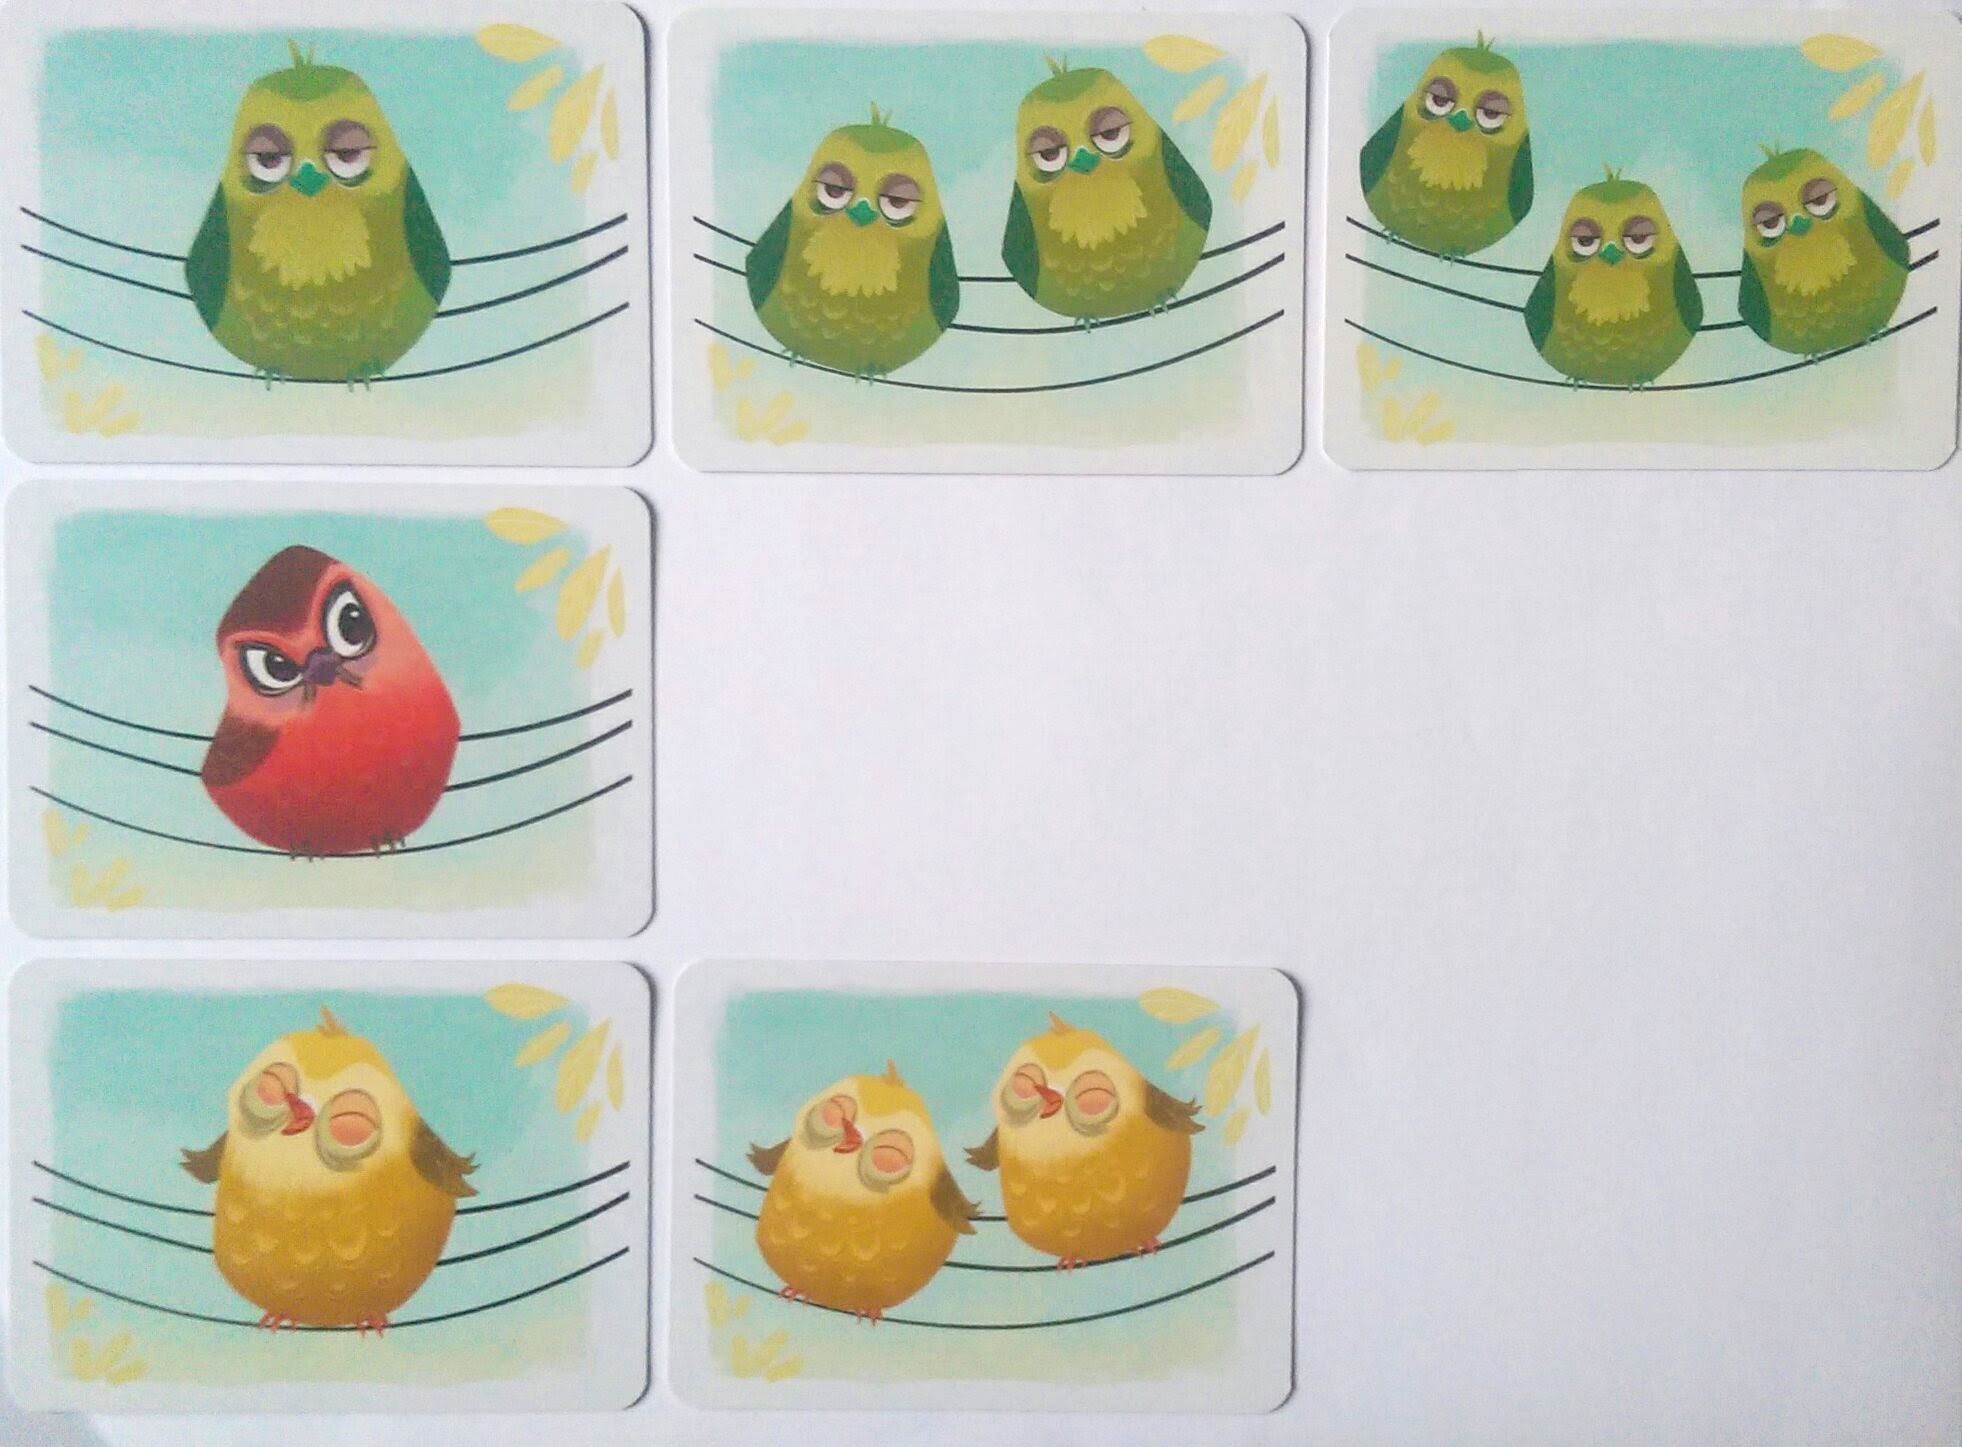 Spilleren har tre samlinger. Den grønne samling er komplet. Den gule mangler kortet med tre gule fugle, og det næste kort i den røde samling er kortet med to røde fugle.